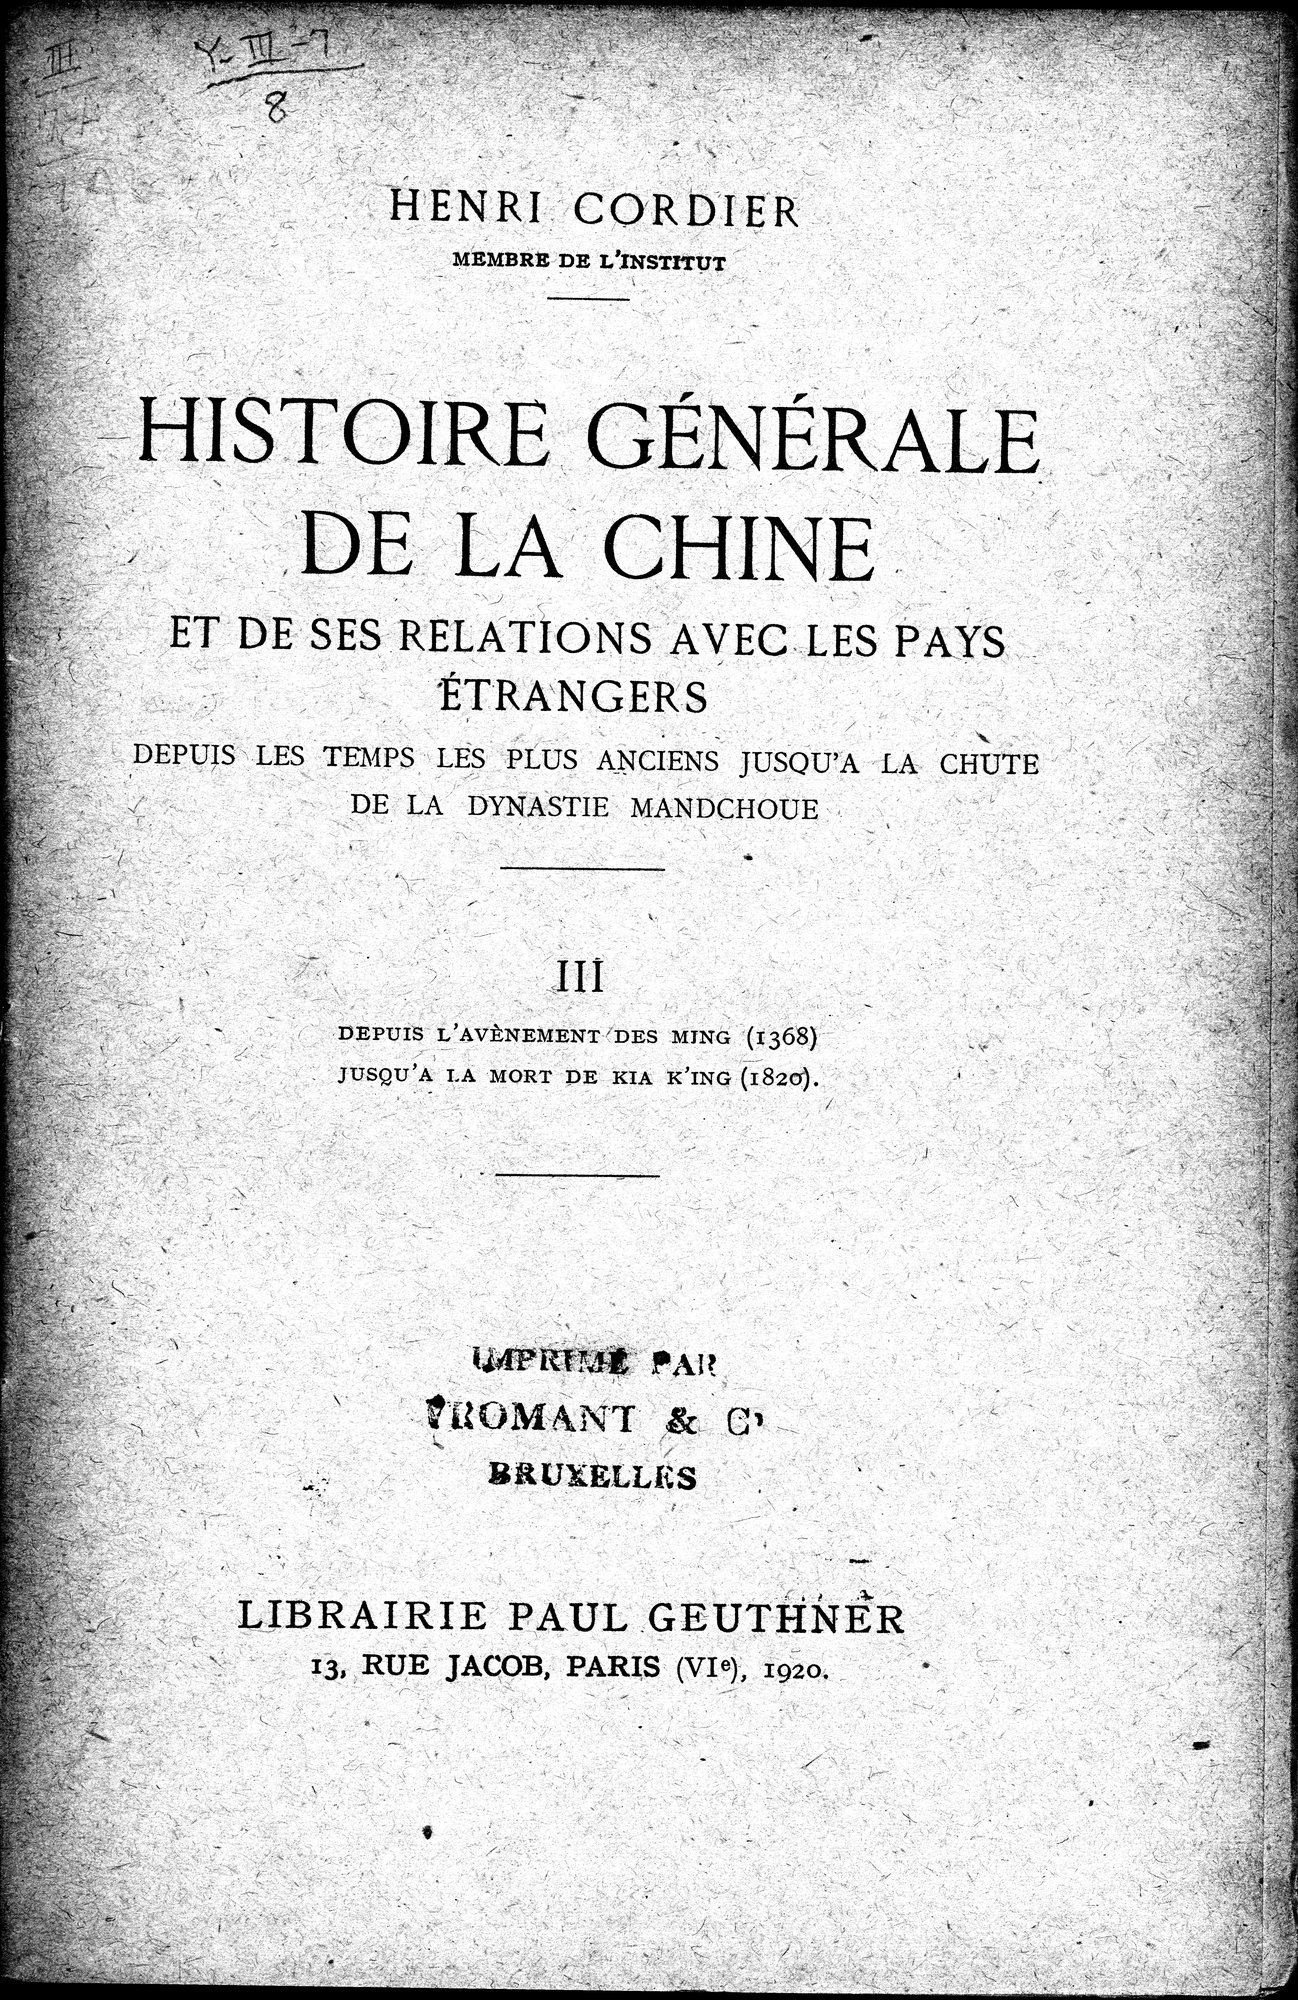 Histoire Générale de la Chine : vol.3 / Page 5 (Grayscale High Resolution Image)